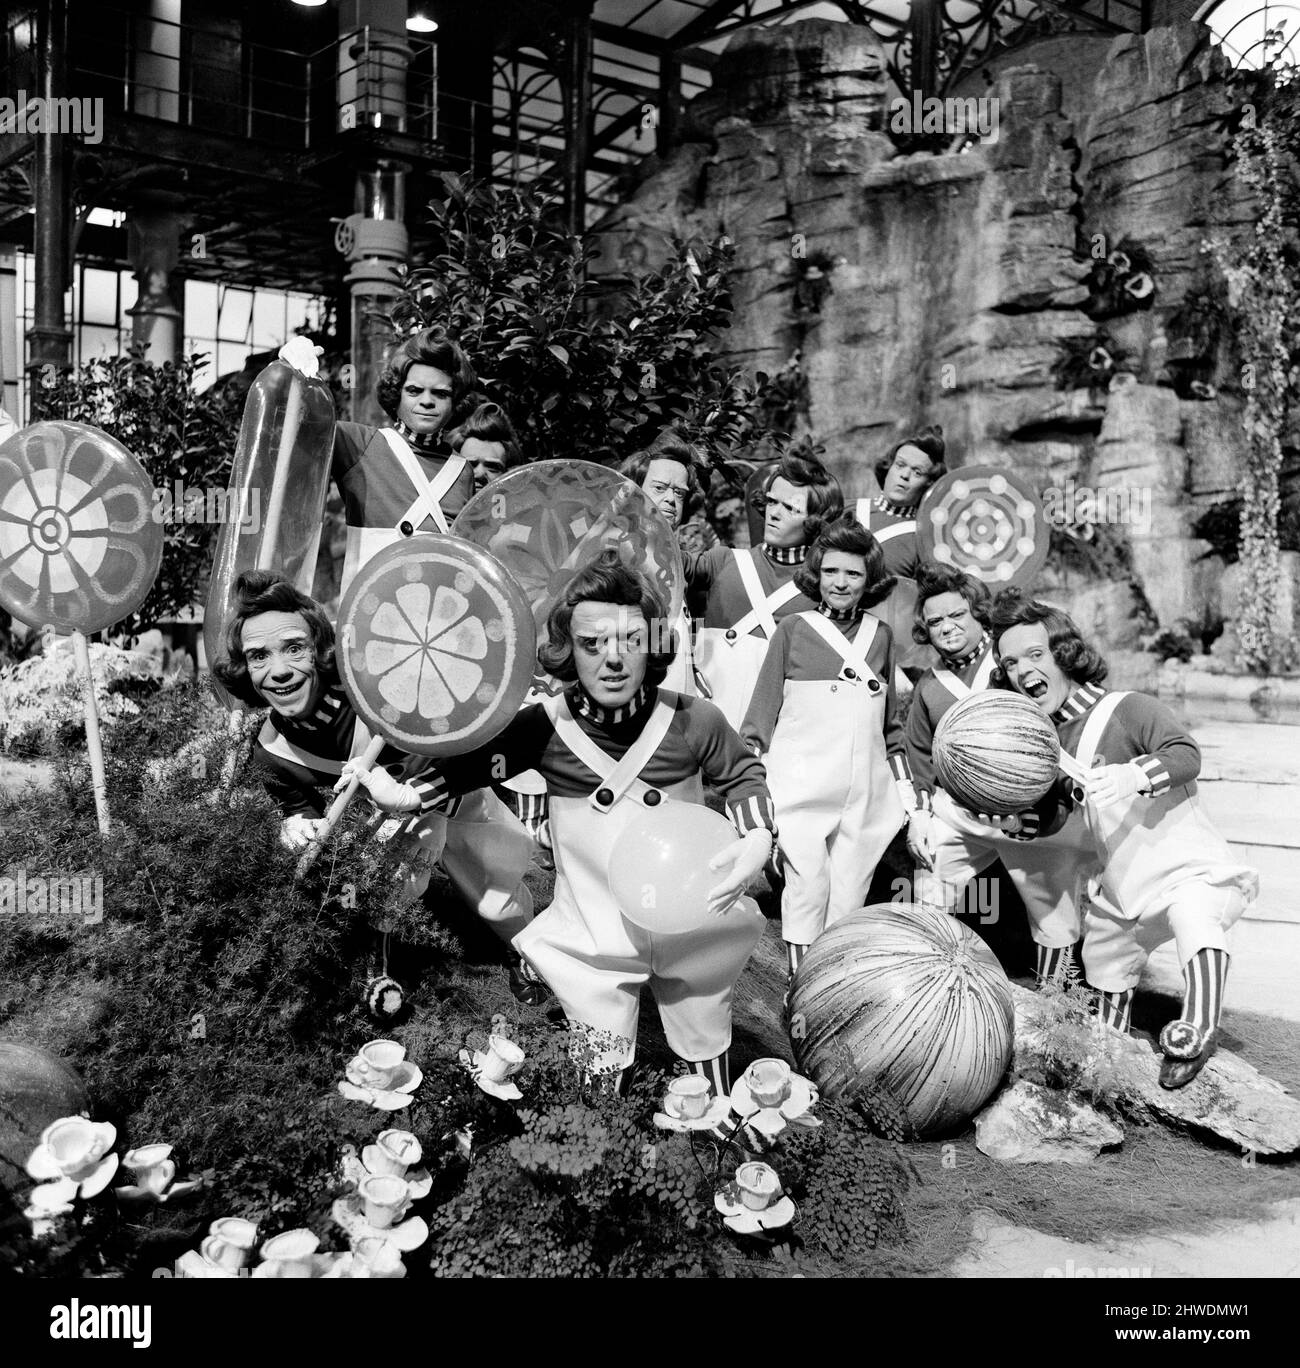 La salle de chocolat du suprêtier de bonbons, Willy Wonka, peut descendre dans l'histoire de l'écran comme non seulement l'un des plus impressionnants studios jamais construits, mais peut-être aussi le plus savoureux. L'immense salle de bonbons a été construite sur la plus grande scène sonore des studios Bavaria de Munich, où la production de David L. Wolper de 'Willy Wonka et la chocolaterie' est en cours de tournage. Les Oompa-Loompas sont illustrés sur le set. 8th octobre 1970. Banque D'Images